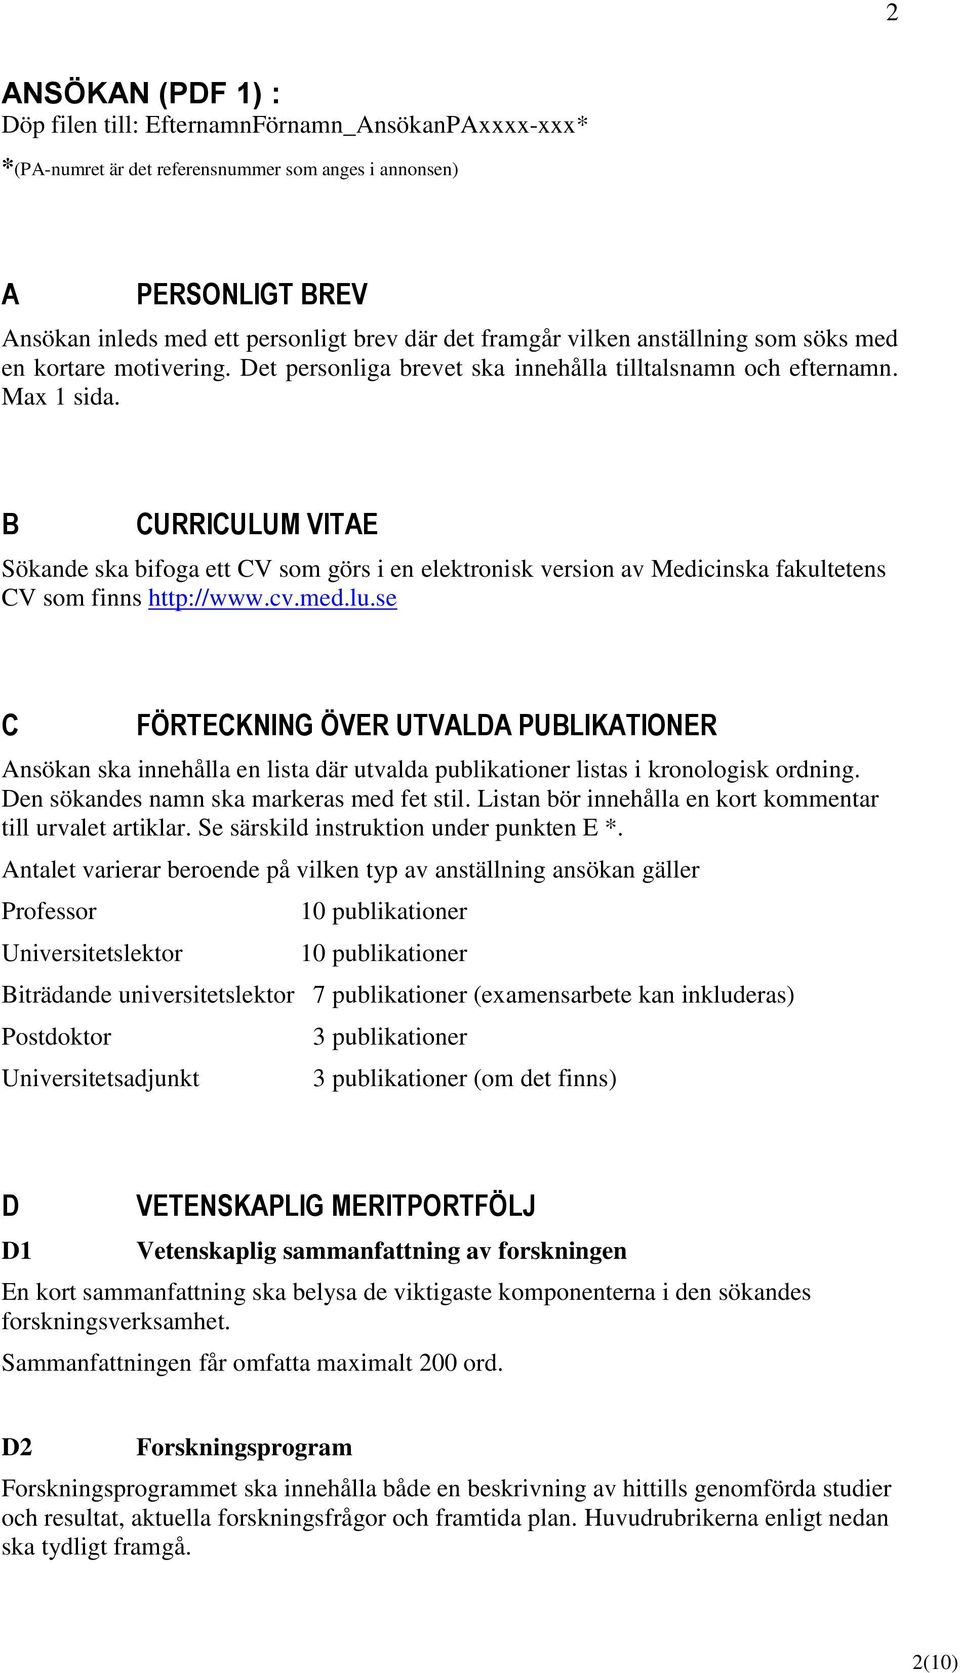 Meritsammanställning för lärare Medicinska fakulteten Lund ...